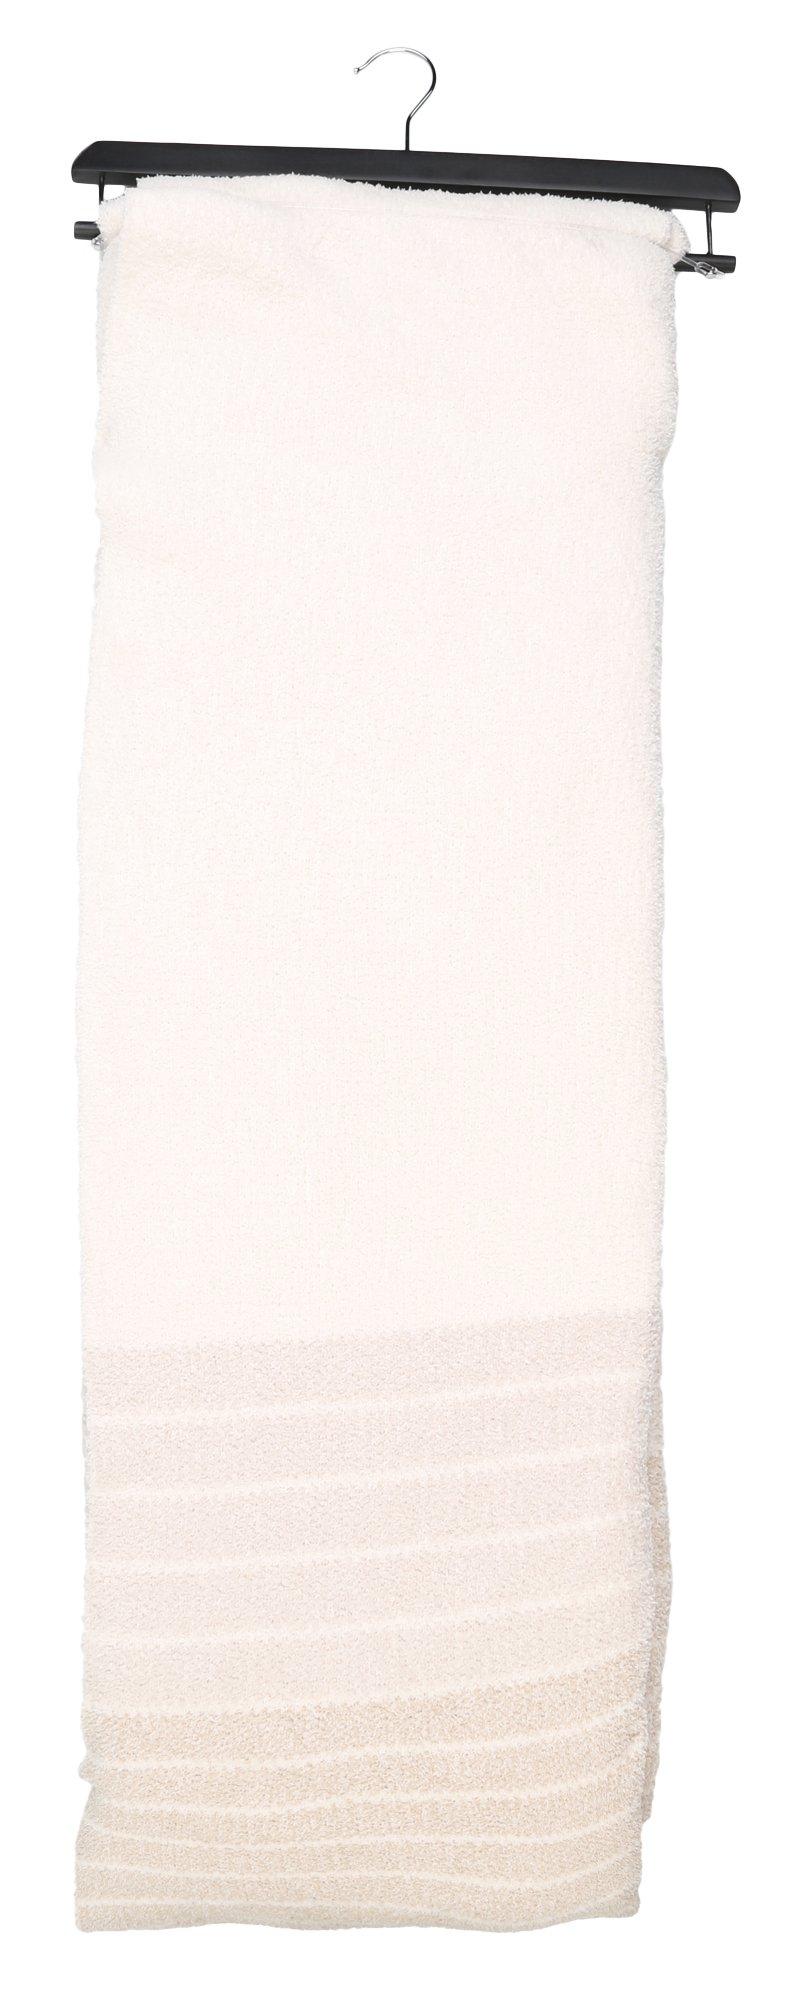 Cozy Knit Throw - White